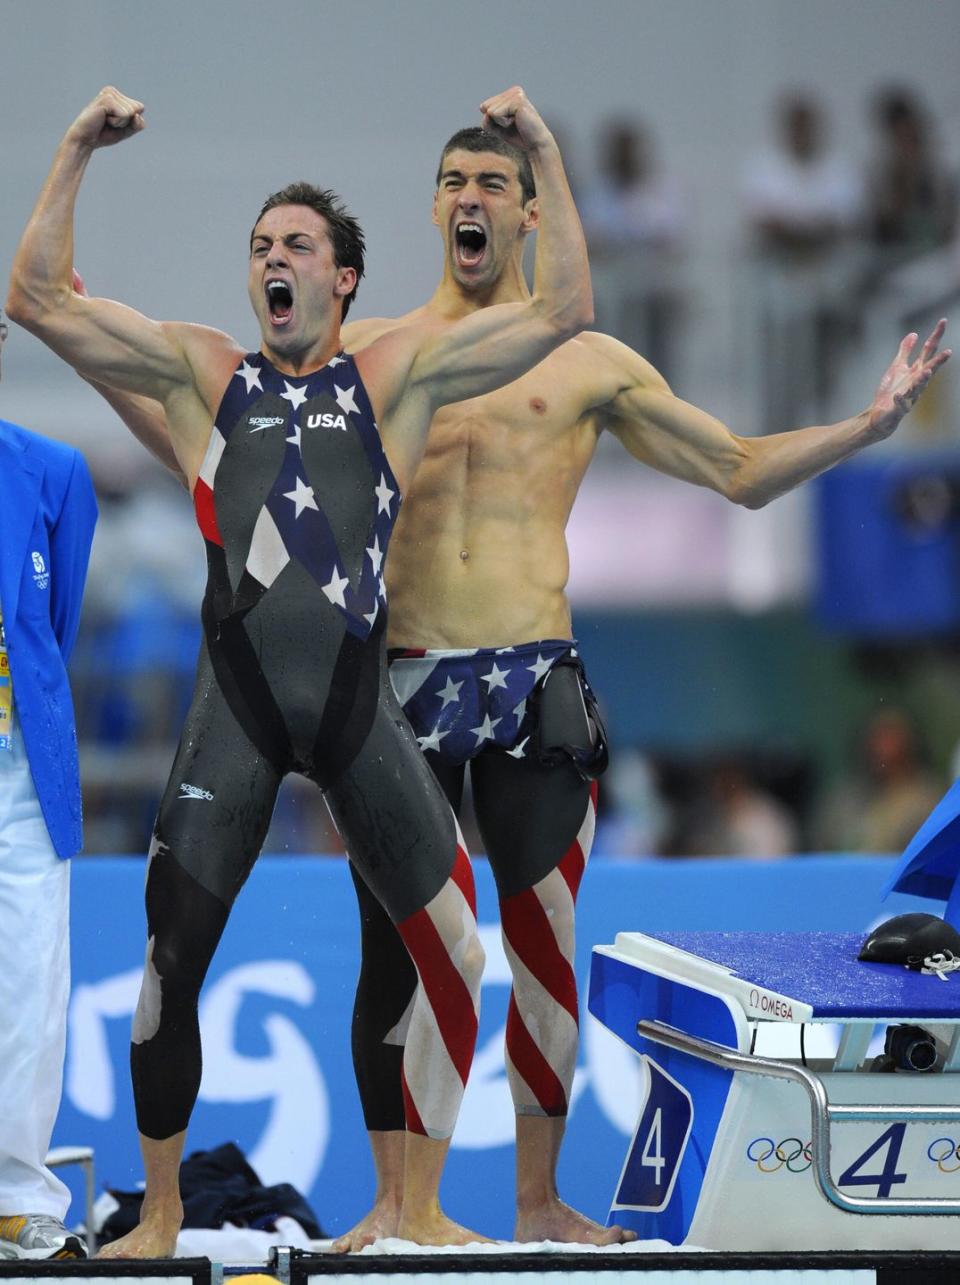 2008: Michael Phelps